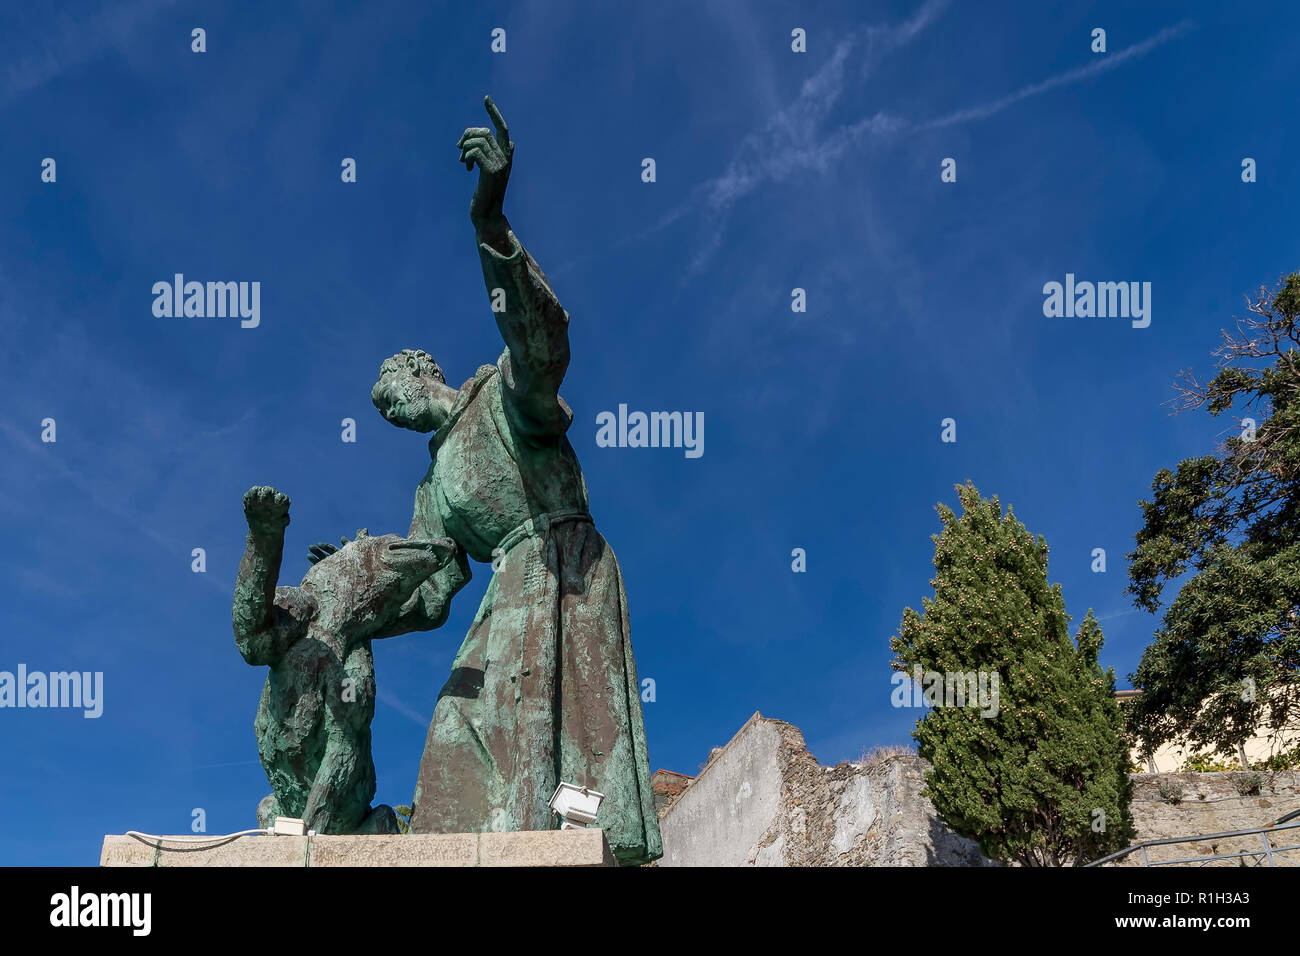 Le ciel bleu est l'arrière-plan de Saint François d'assise avec le chien, Monterosso al Mare, Cinque Terre, ligurie, italie Banque D'Images